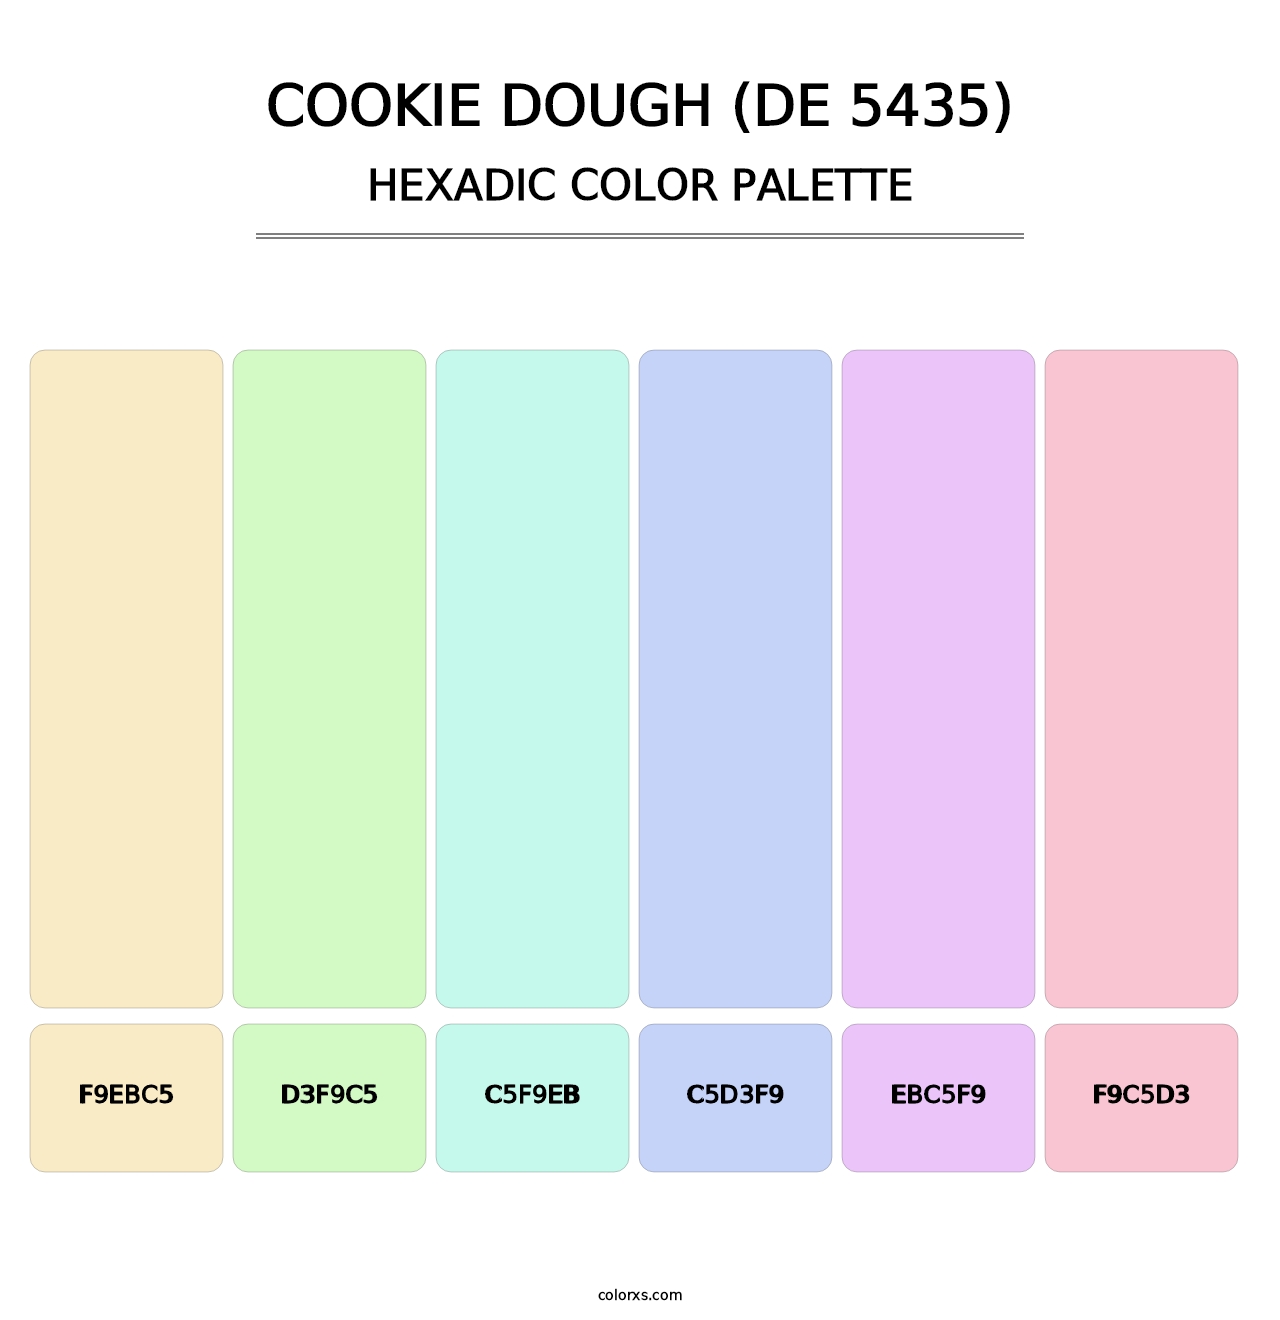 Cookie Dough (DE 5435) - Hexadic Color Palette